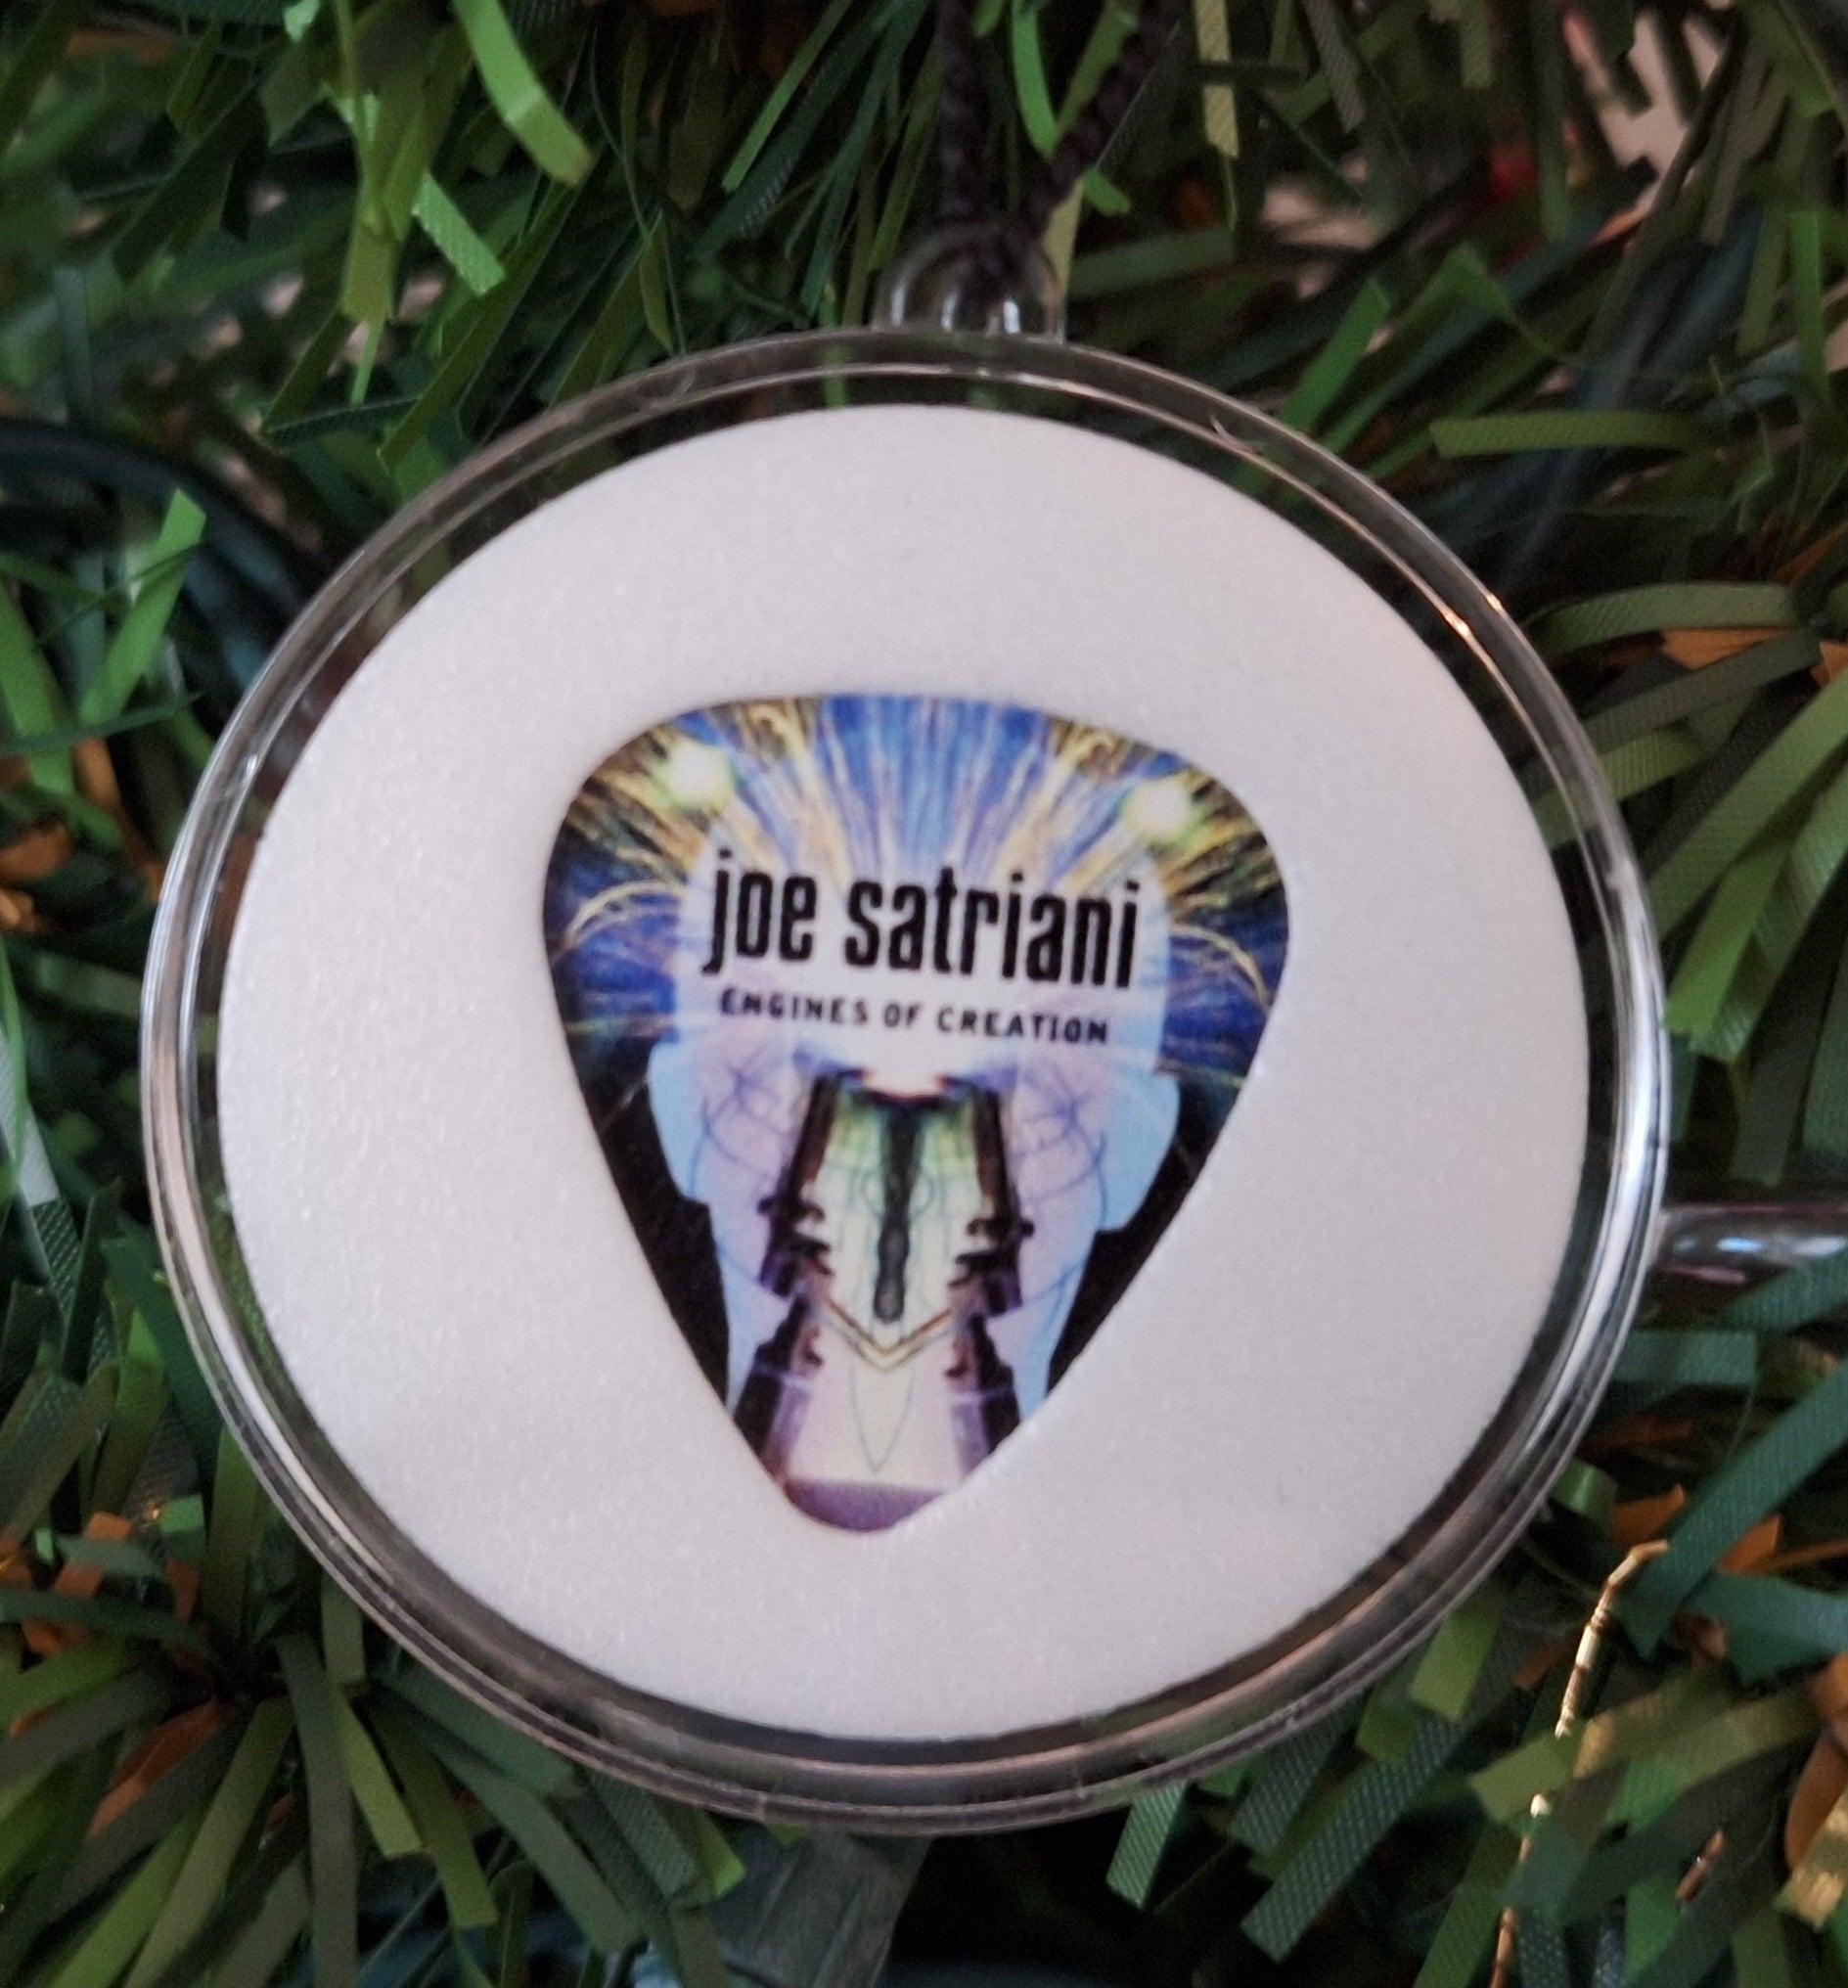 Joe Satriani's 'Engines of Creation